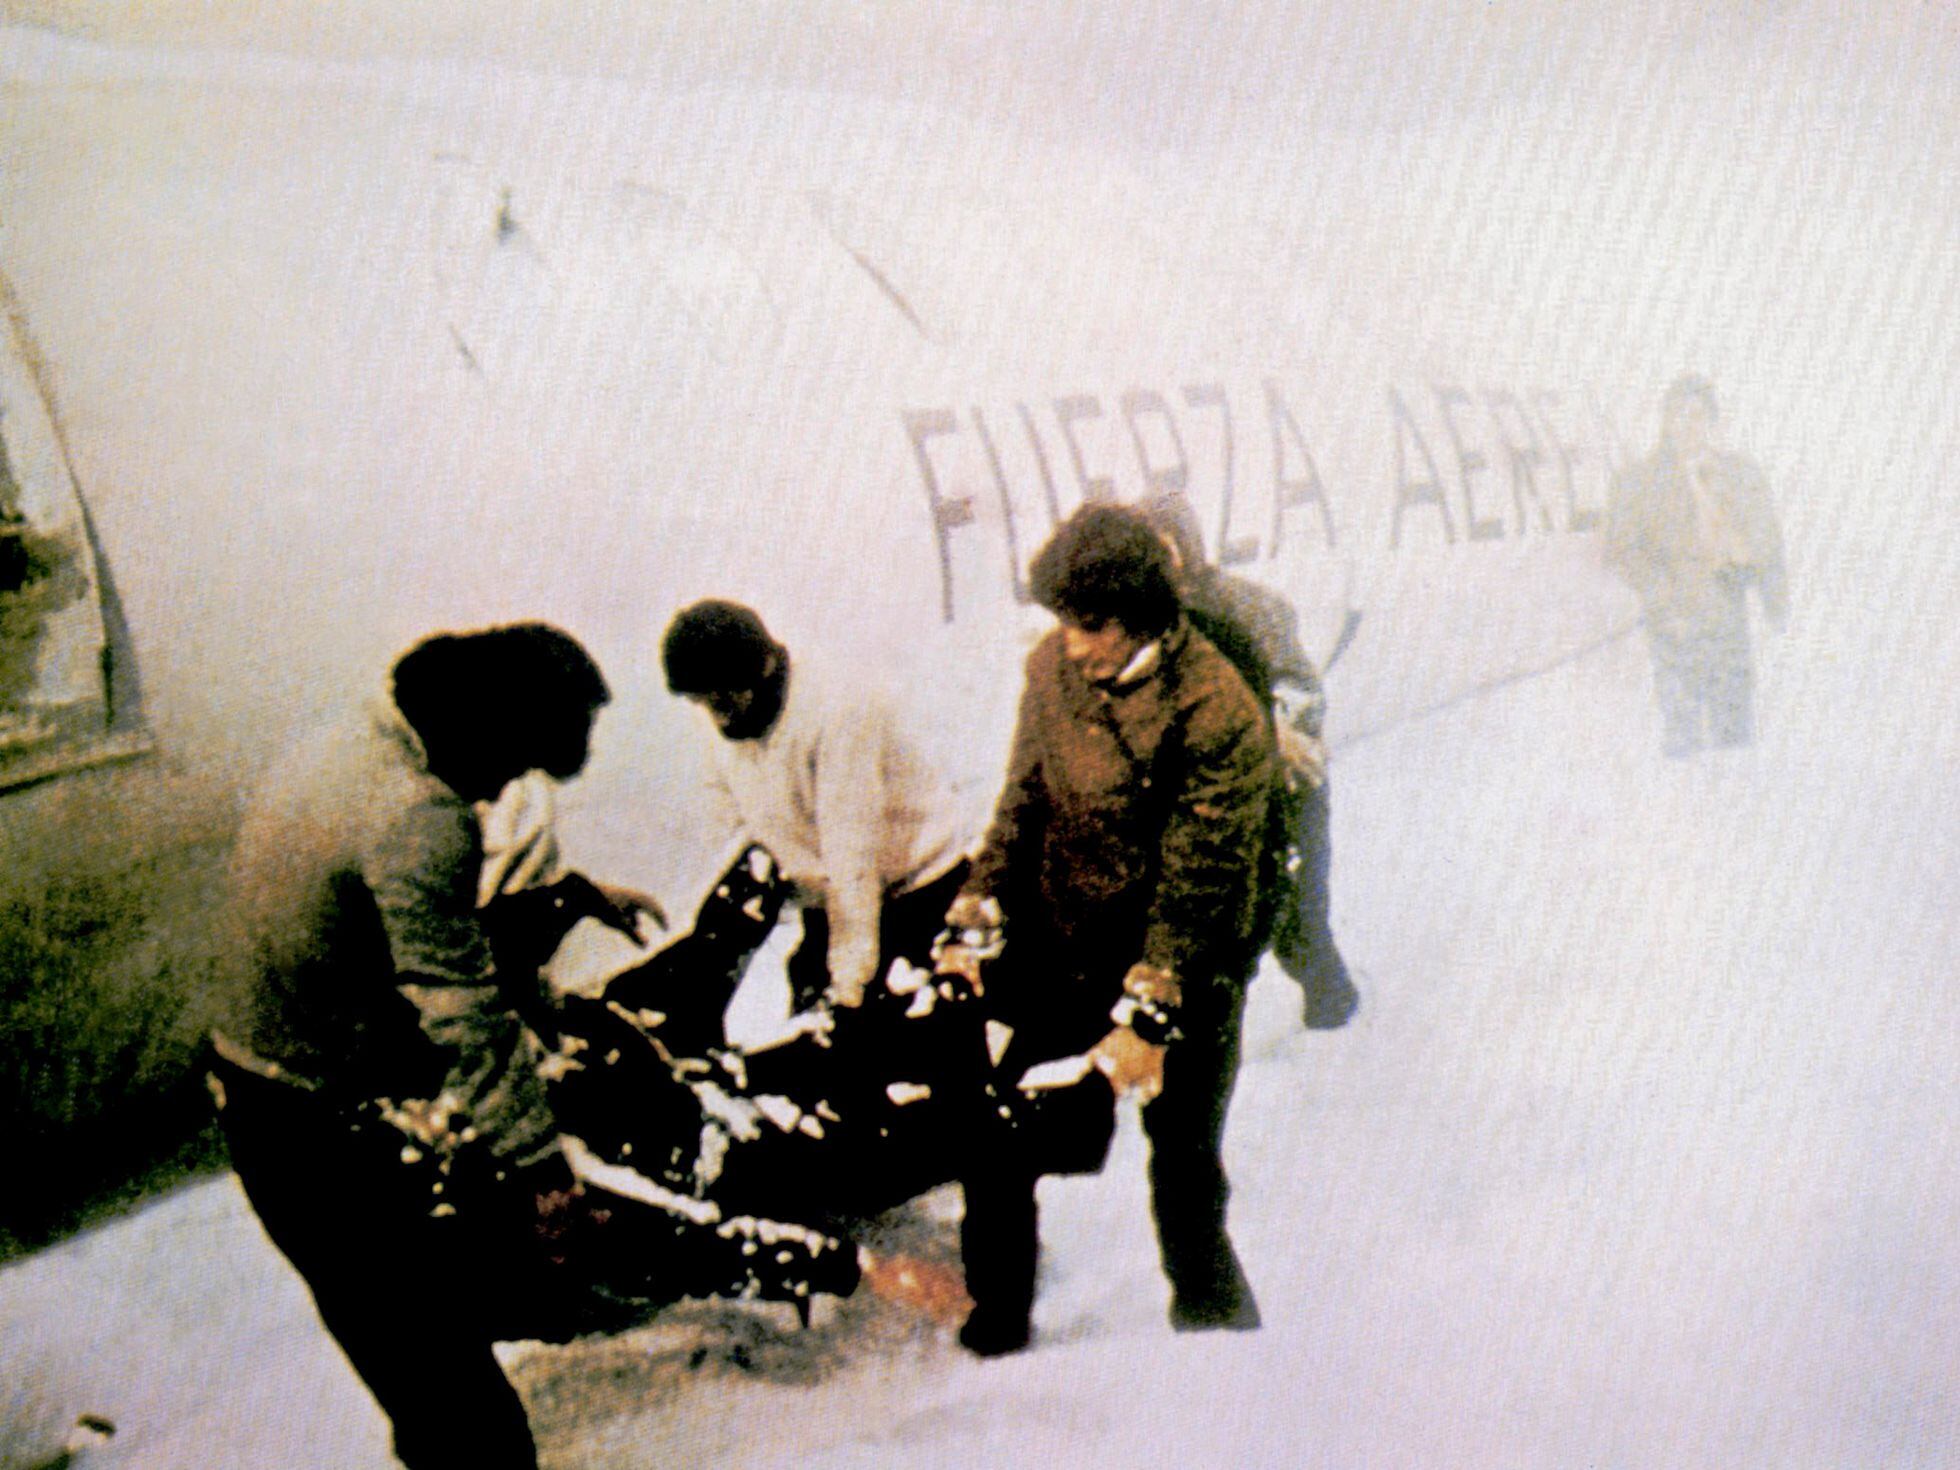 1972 Andes Plane Crash Survivor on Decision to Eat Bodies of Friends